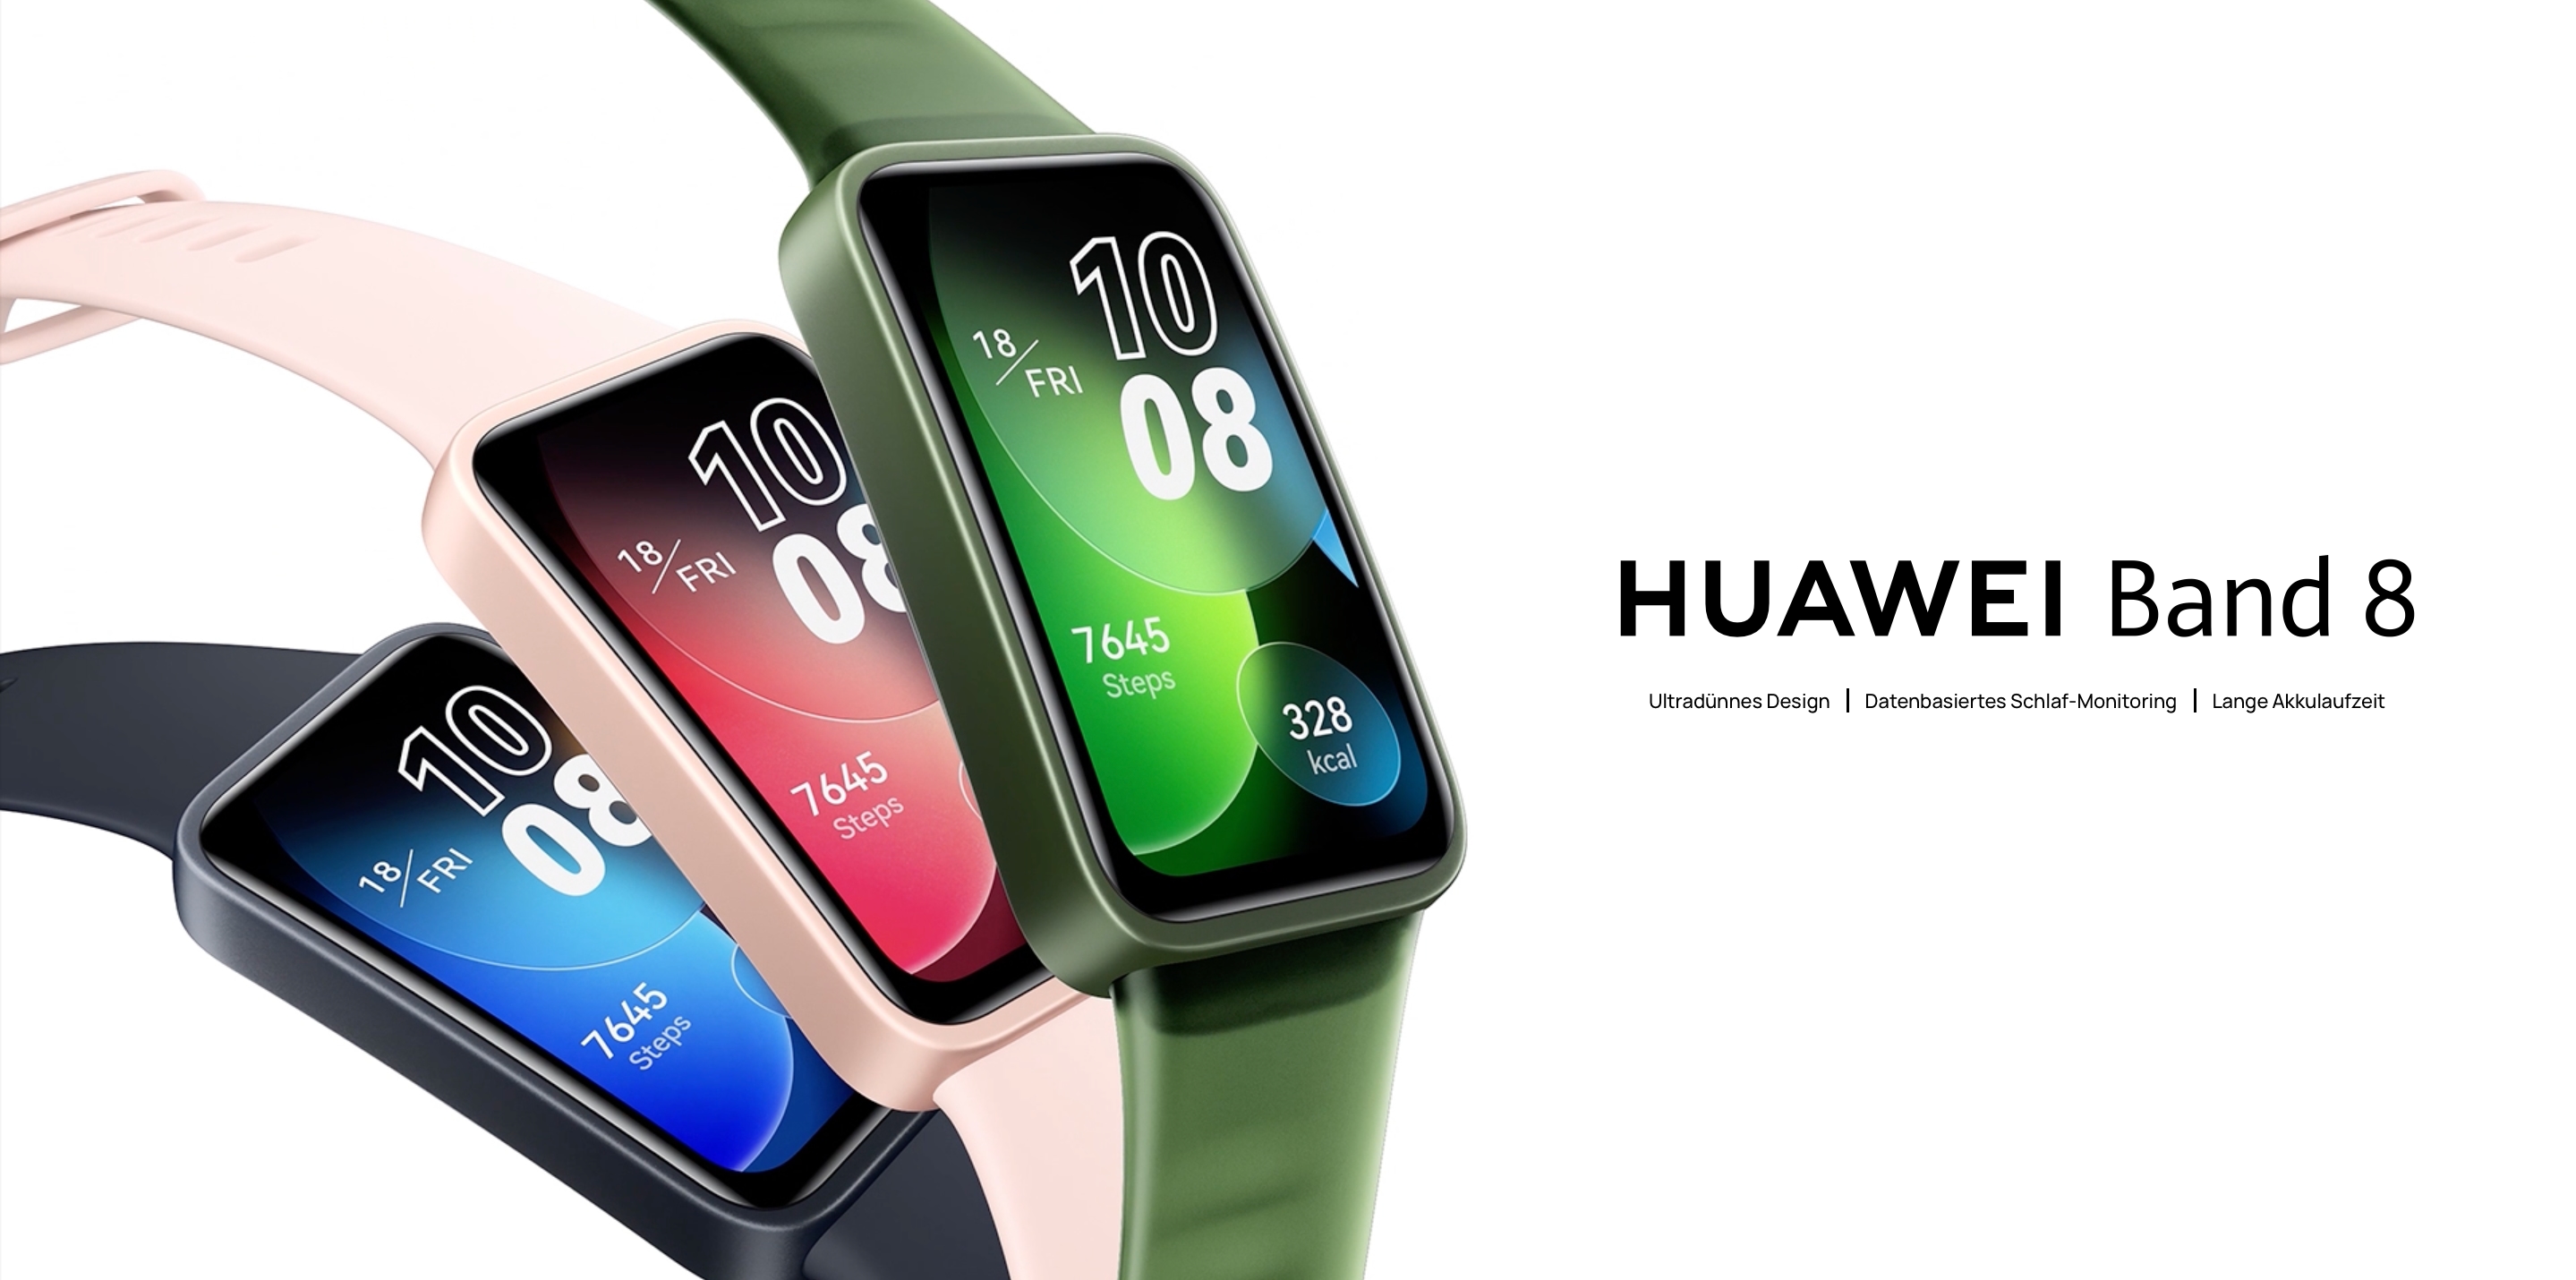 Huawei Band 8 met AMOLED-scherm, SpO2-sensor, batterijduur tot 14 dagen en een prijs van 59 euro debuteert in Duitsland